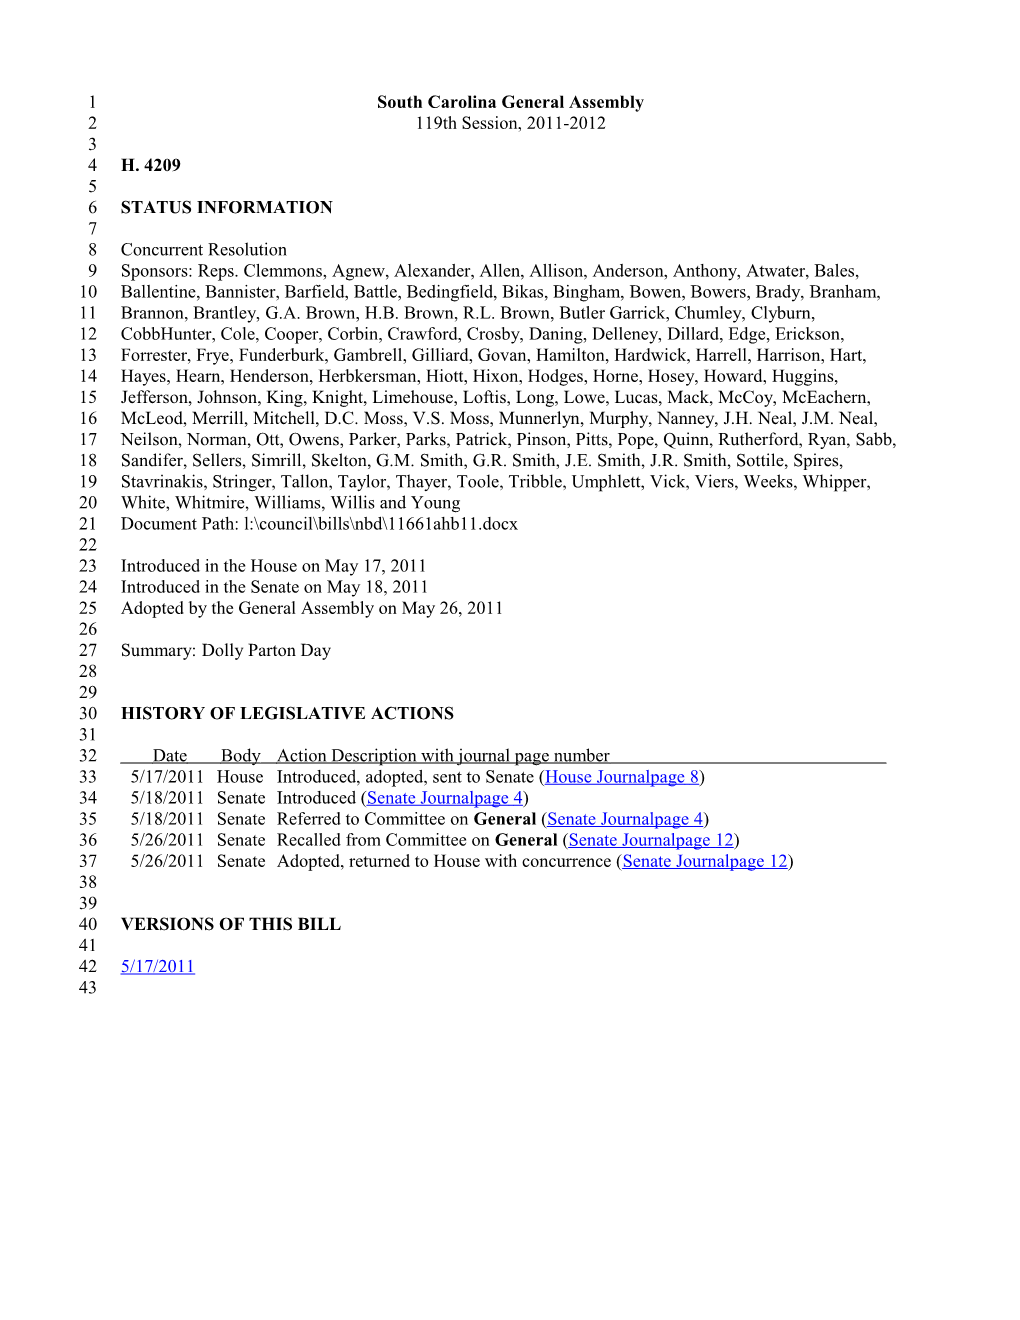 2011-2012 Bill 4209: Dolly Parton Day - South Carolina Legislature Online